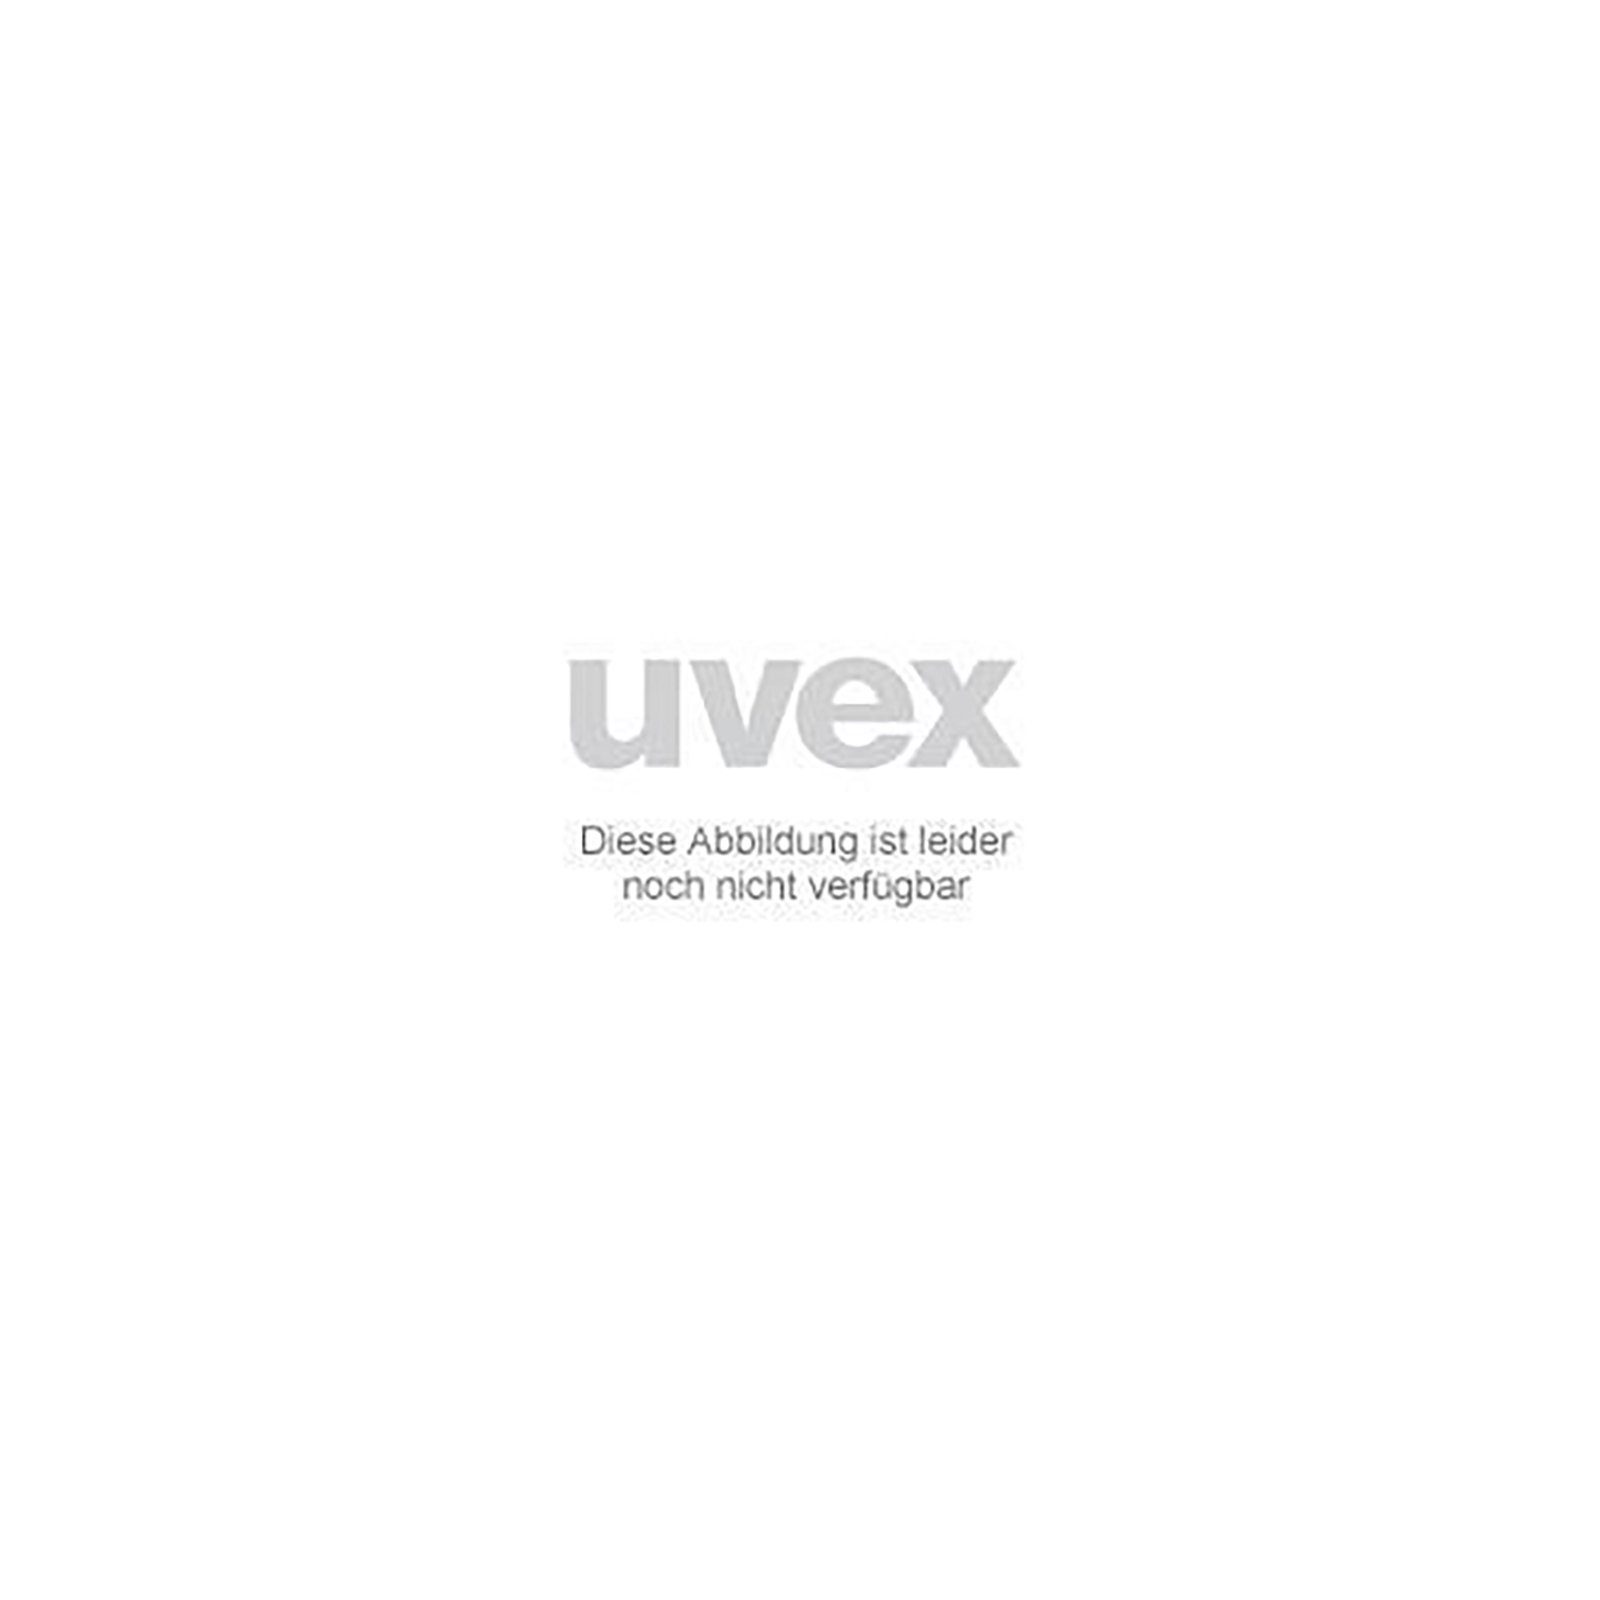 Uvex Arbeitsschutzbrille Ersatzscheibe 4 grau Schweißerschutz 9104084